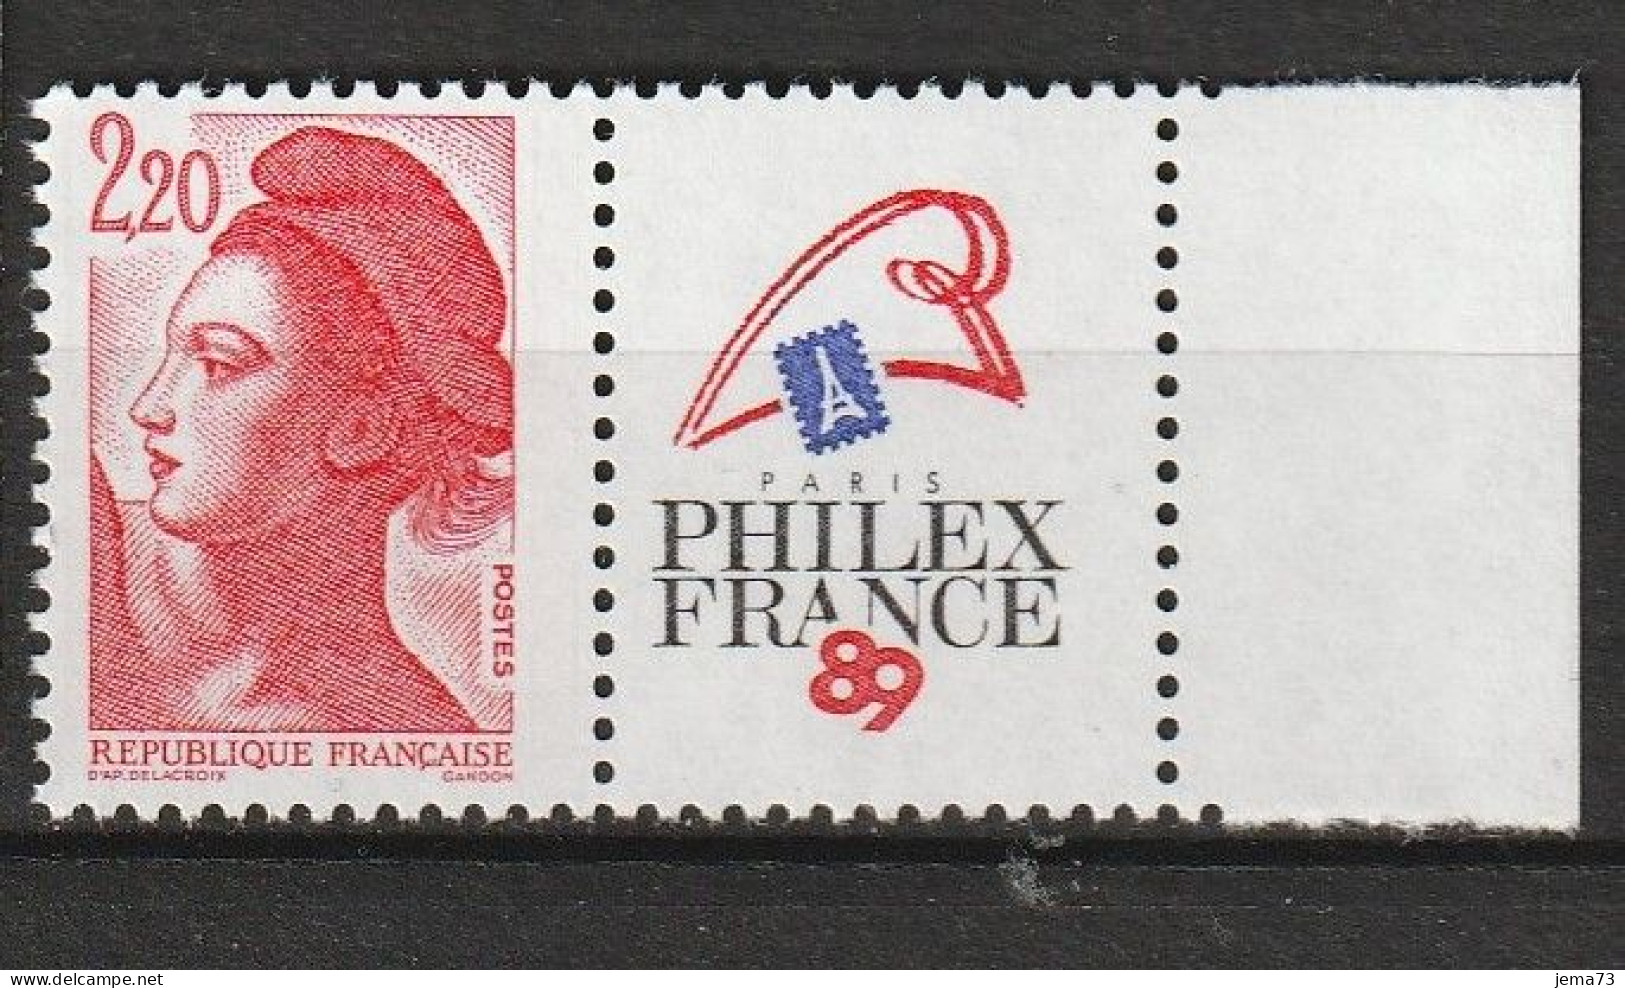 N° 2461 Philexfrance 89Exposition Philatélique Mondiale à Paris; Beau Timbre Neuf - Nuovi